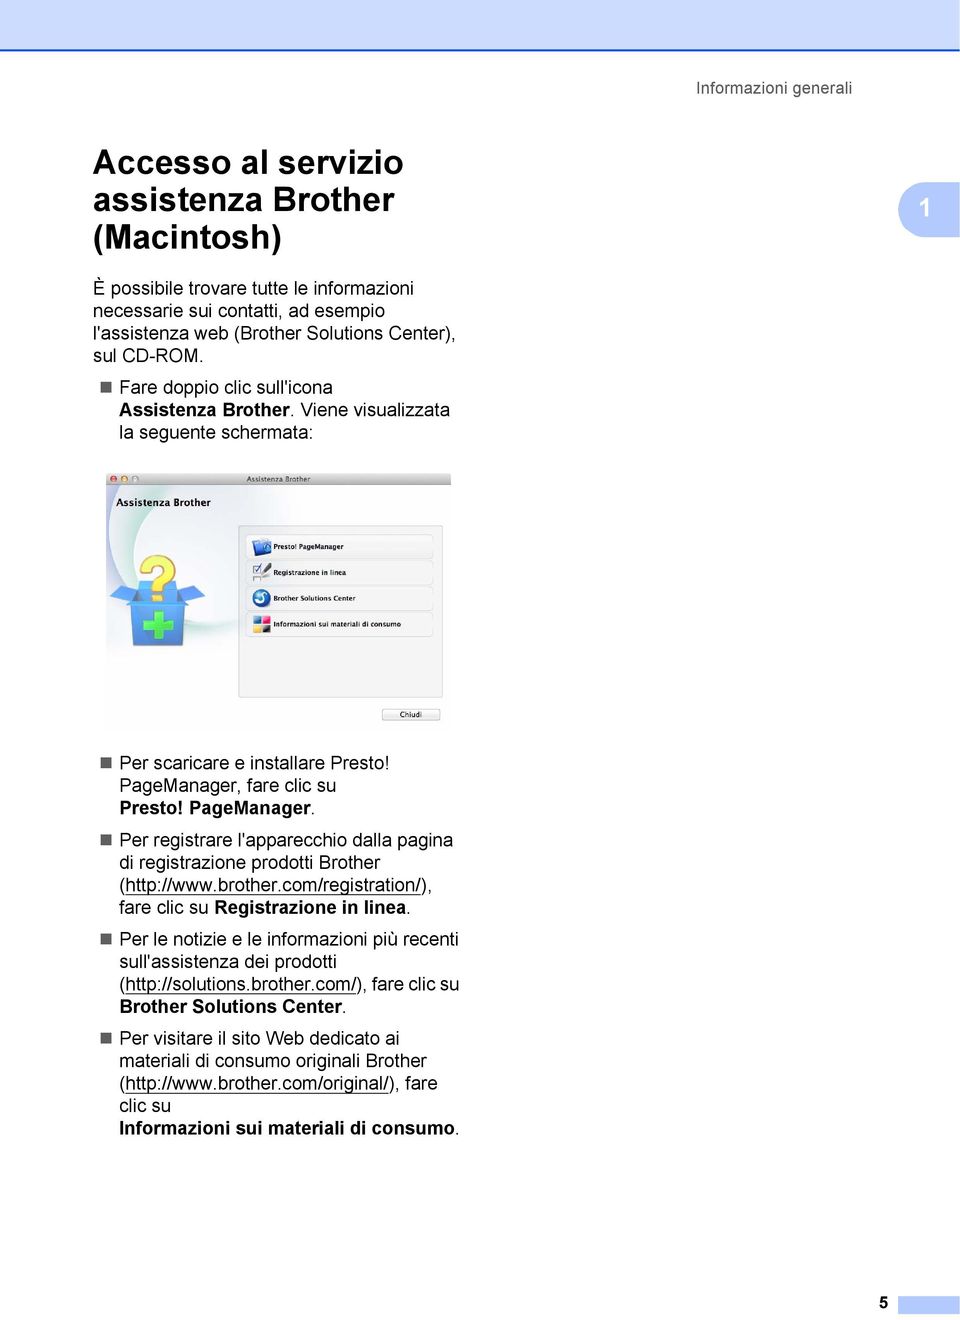 fare clic su Presto! PageManager. Per registrare l'apparecchio dalla pagina di registrazione prodotti Brother (http://www.brother.com/registration/), fare clic su Registrazione in linea.